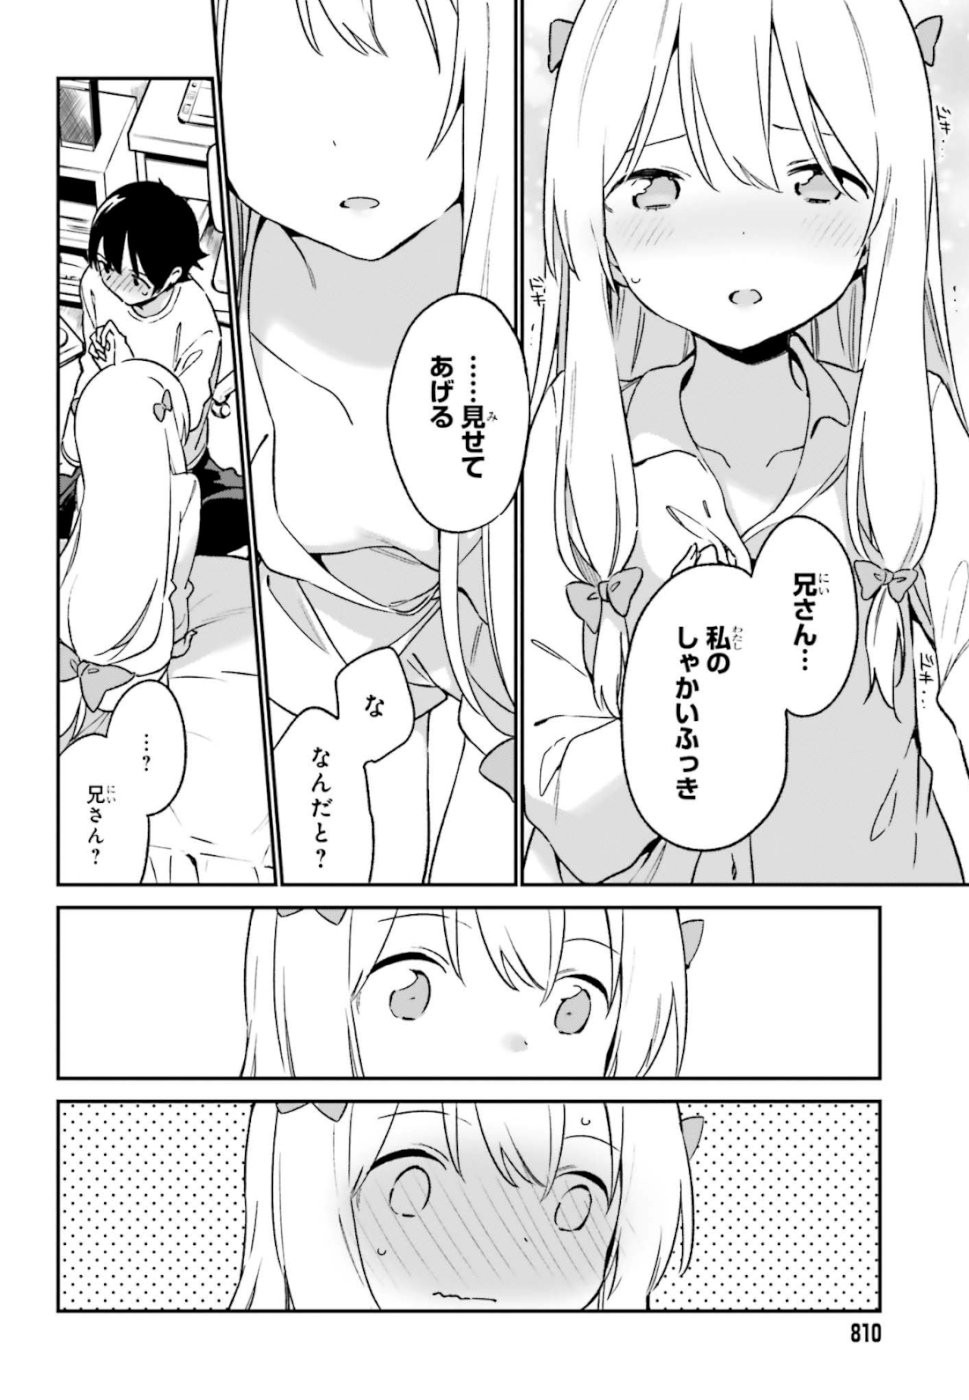 Ero Manga Sensei - Chapter 61 - Page 10